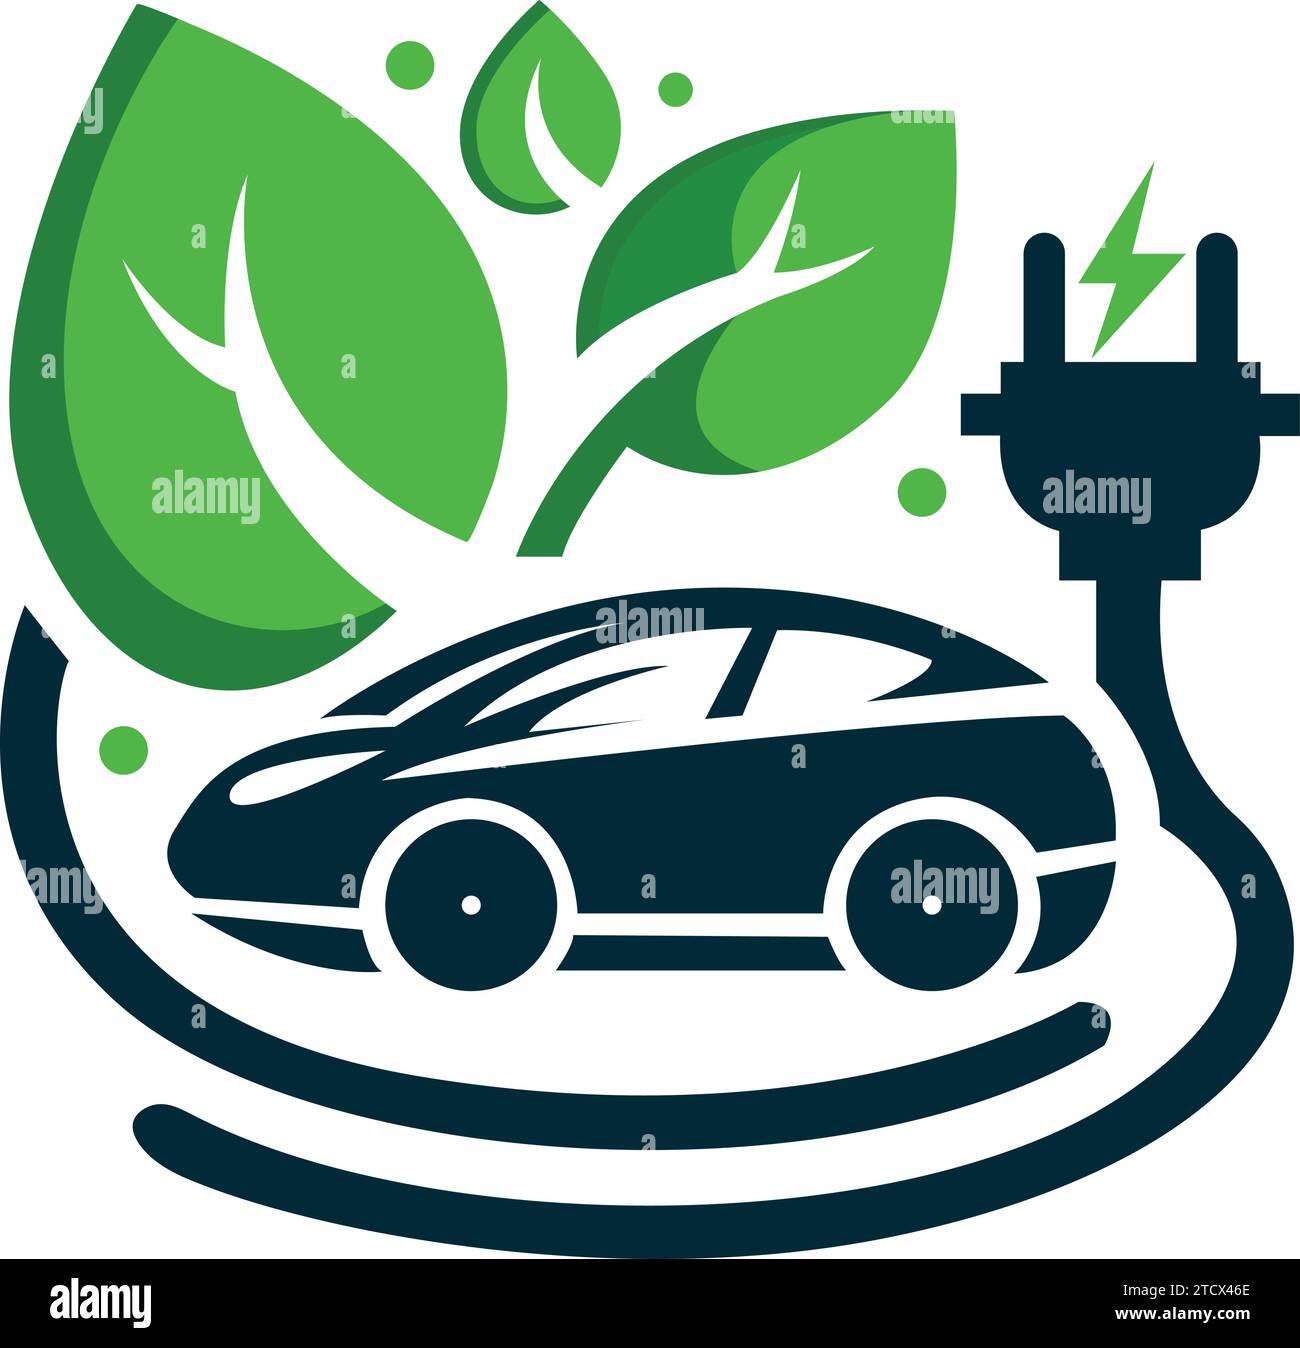 Impulse la innovación con nuestra plantilla de logotipo de coche eléctrico en vector. Este emblema combina conceptos ecológicos con un diseño de vanguardia, simbolizando la innovación Ilustración del Vector